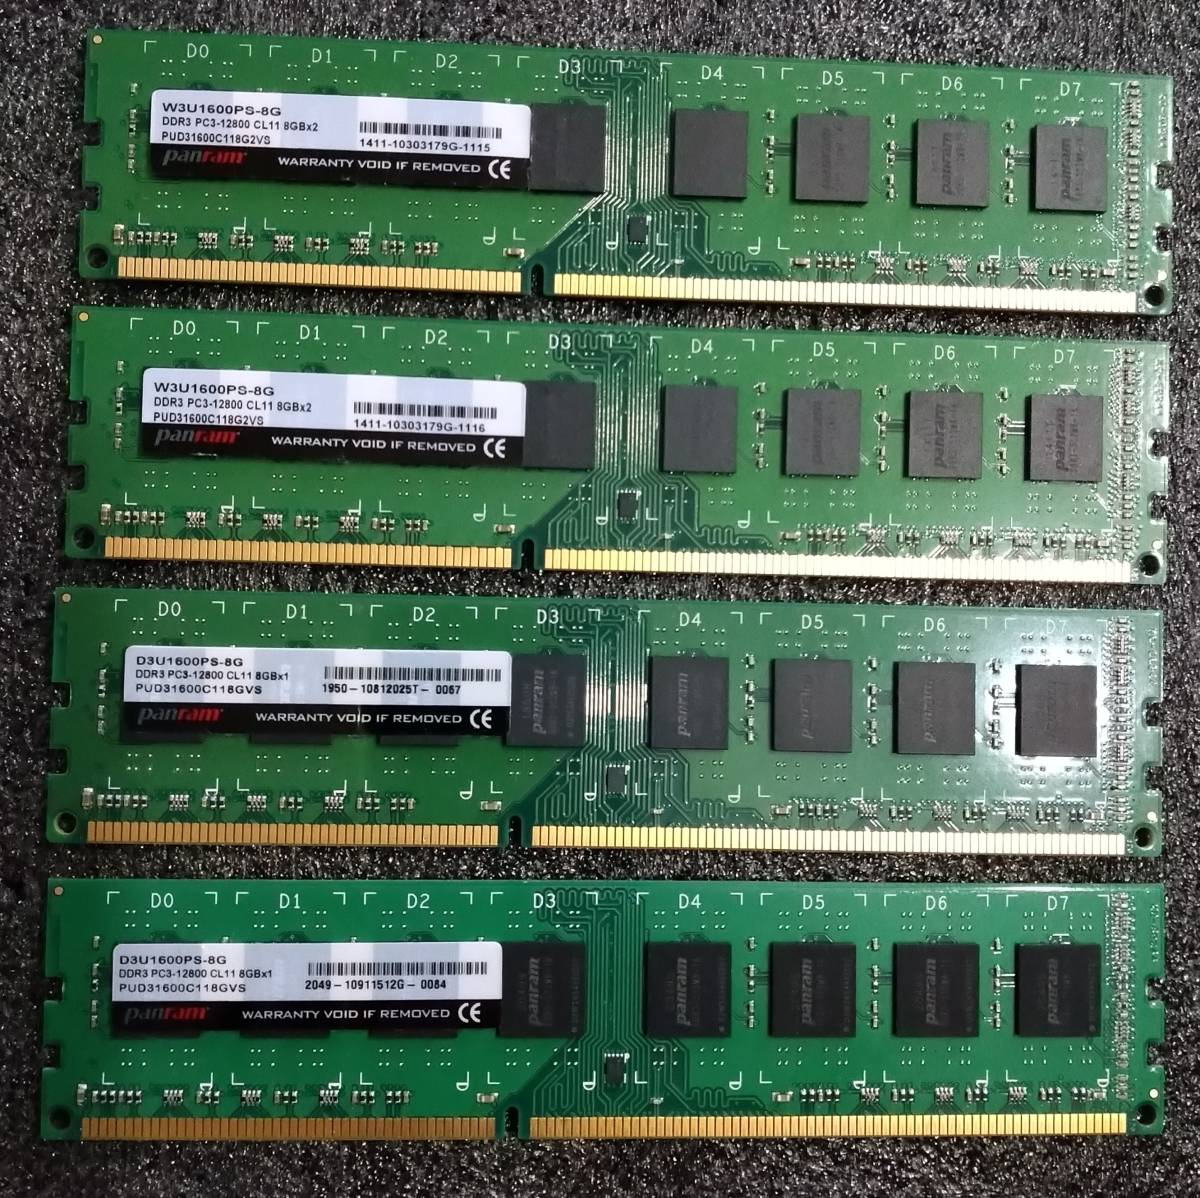 【中古】DDR3メモリ 32GB(8GB4枚組) CFD D3U1600PS-8G、W3U1600PS-8G [DDR3-1600 PC3-12800]